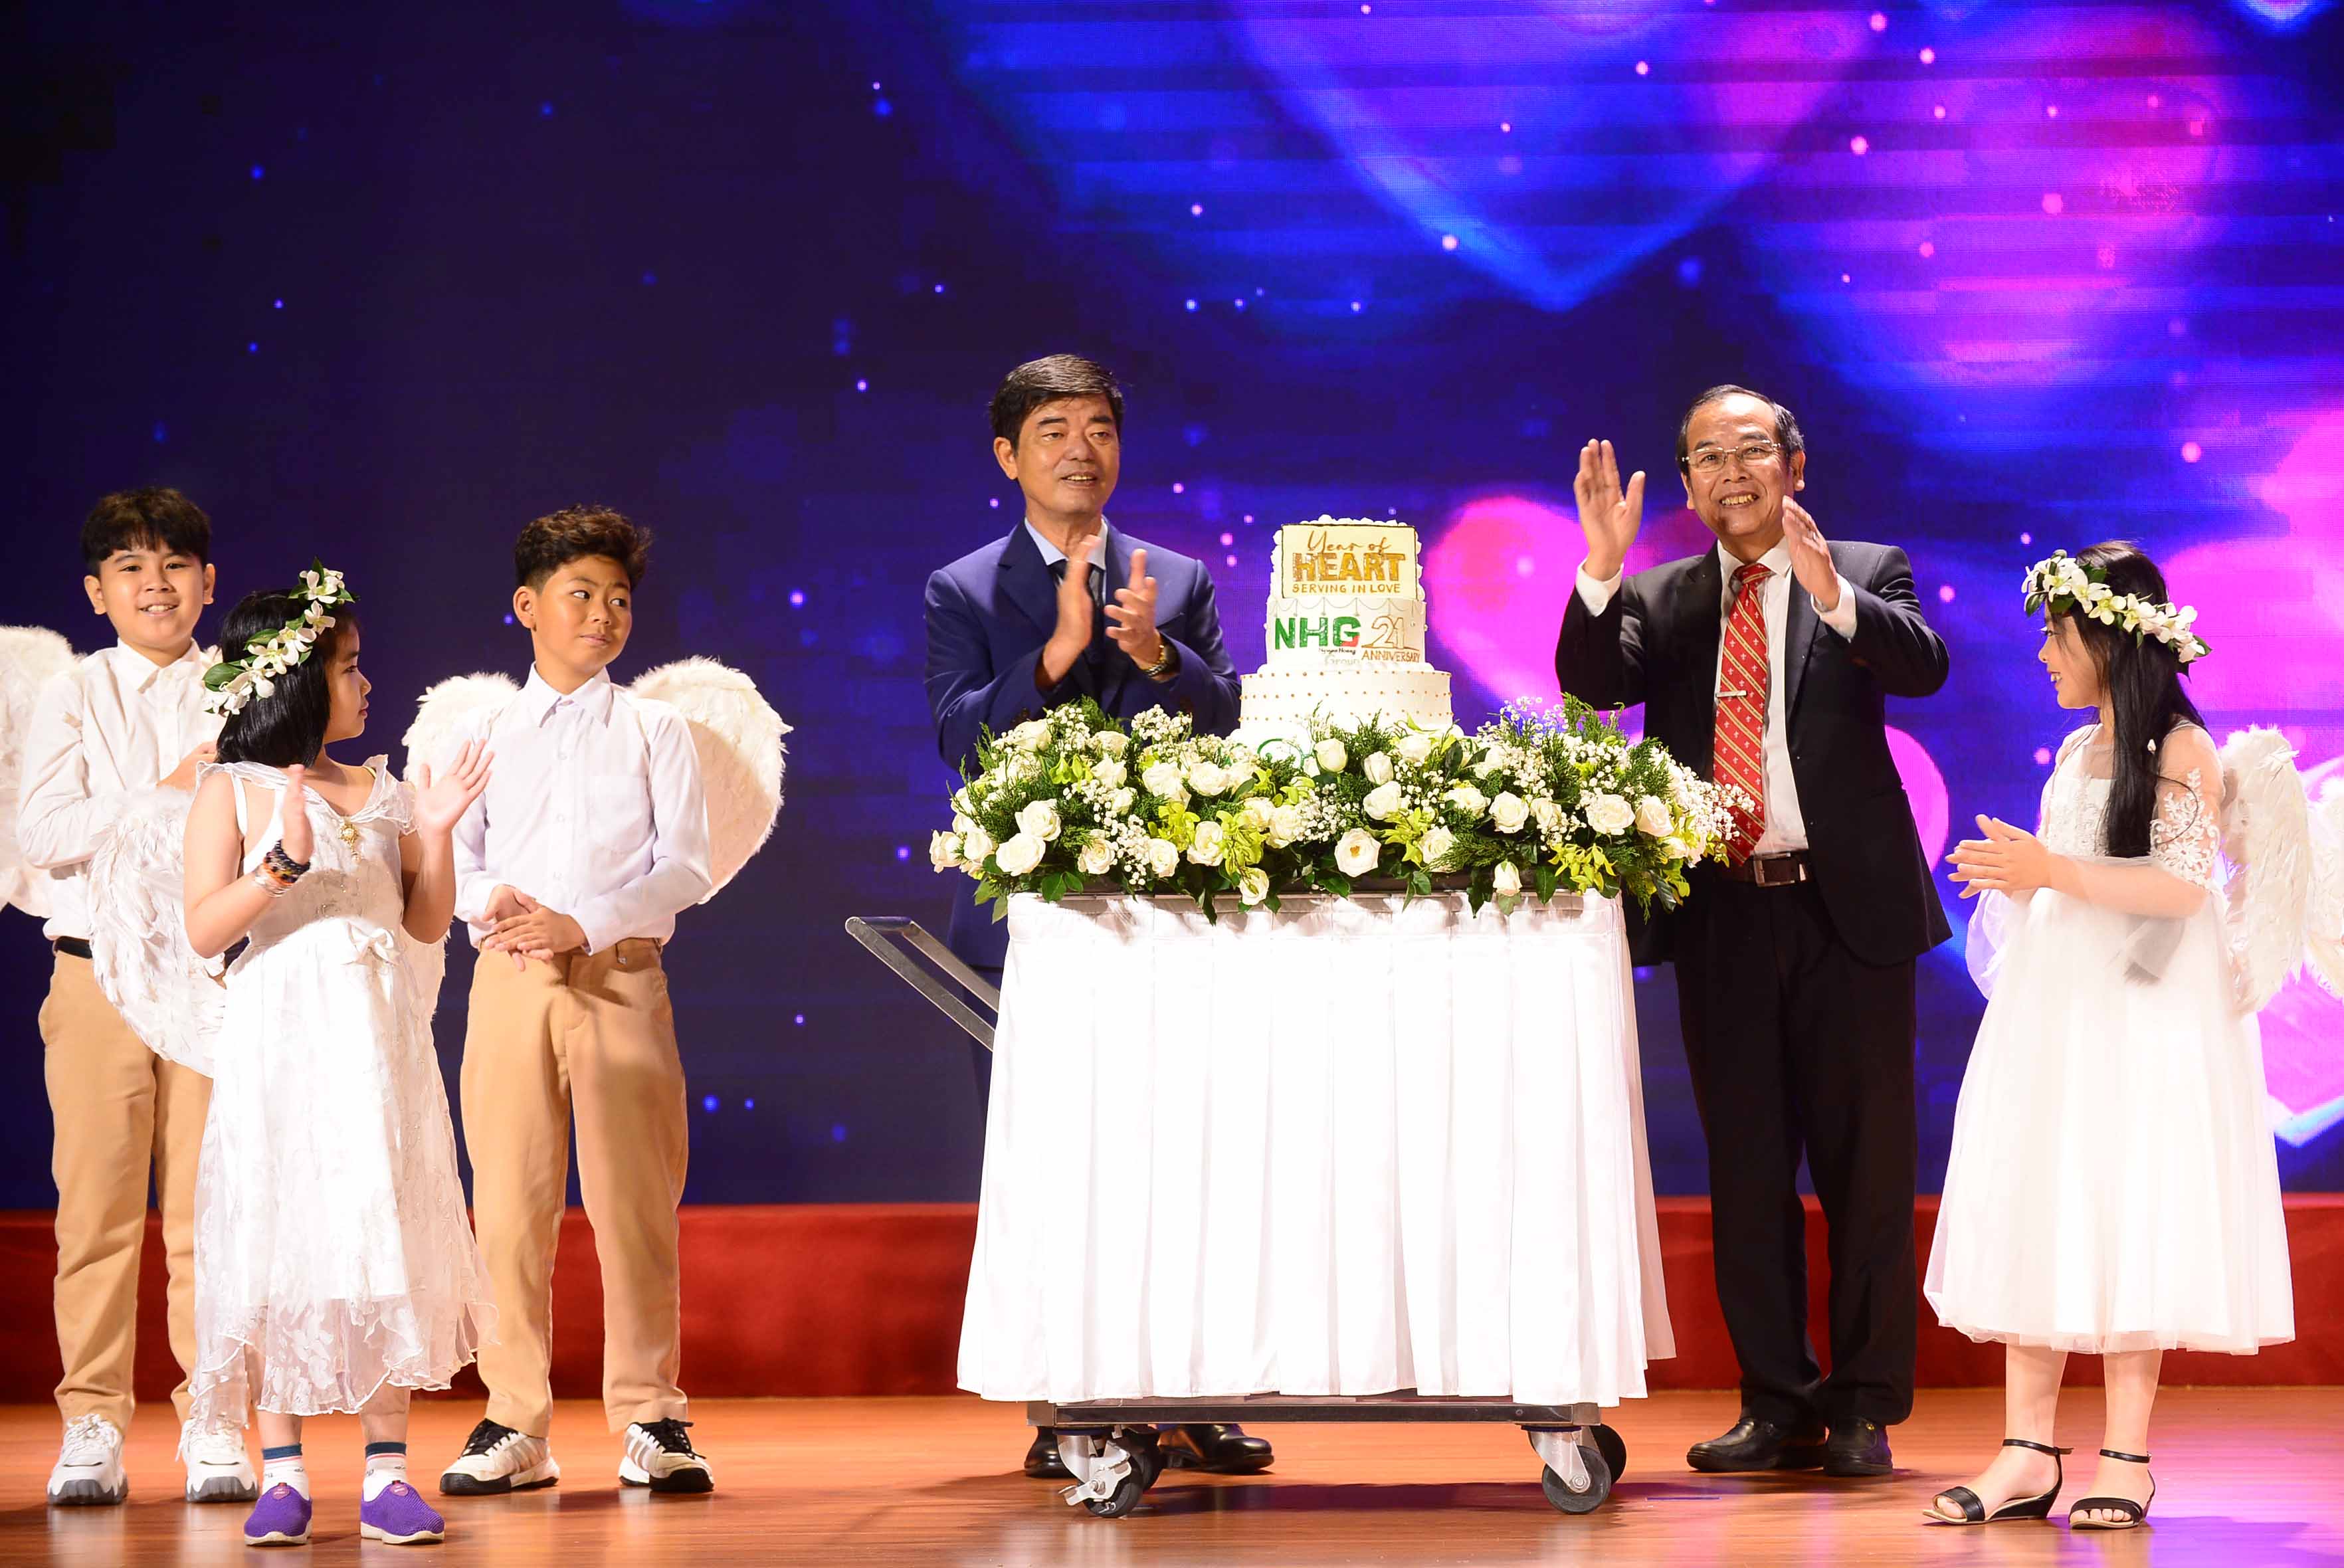 Tập đoàn Nguyễn Hoàng khẳng định vị trí dẫn đầu lĩnh vực giáo dục tư thục